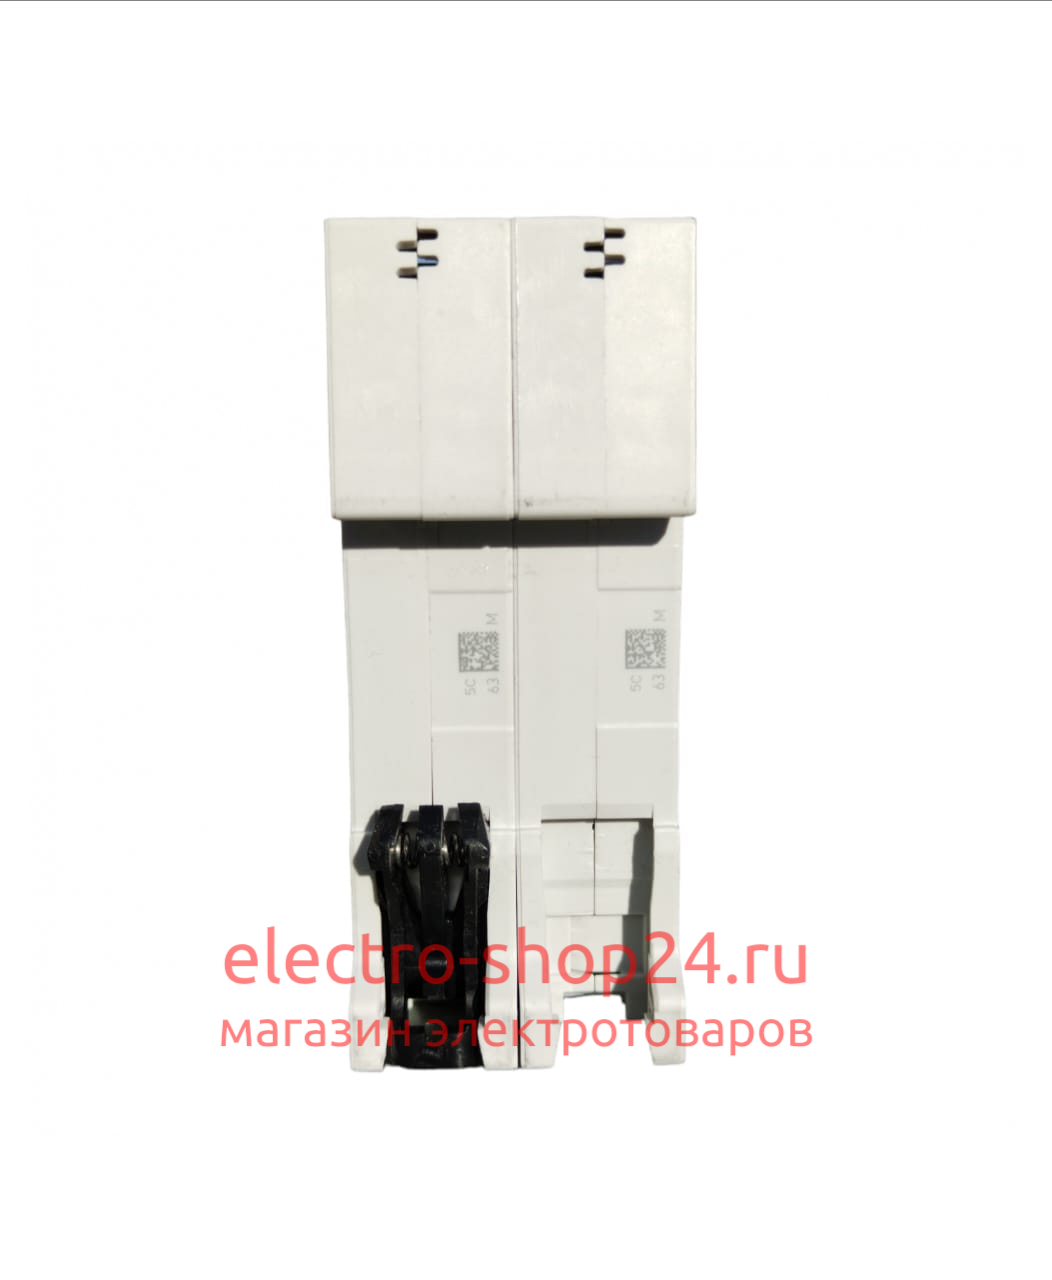 S202 C25 Автоматический выключатель 2-полюсный 25А 6кА (хар-ка C) ABB 2CDS252001R0254 2CDS252001R0254 - магазин электротехники Electroshop